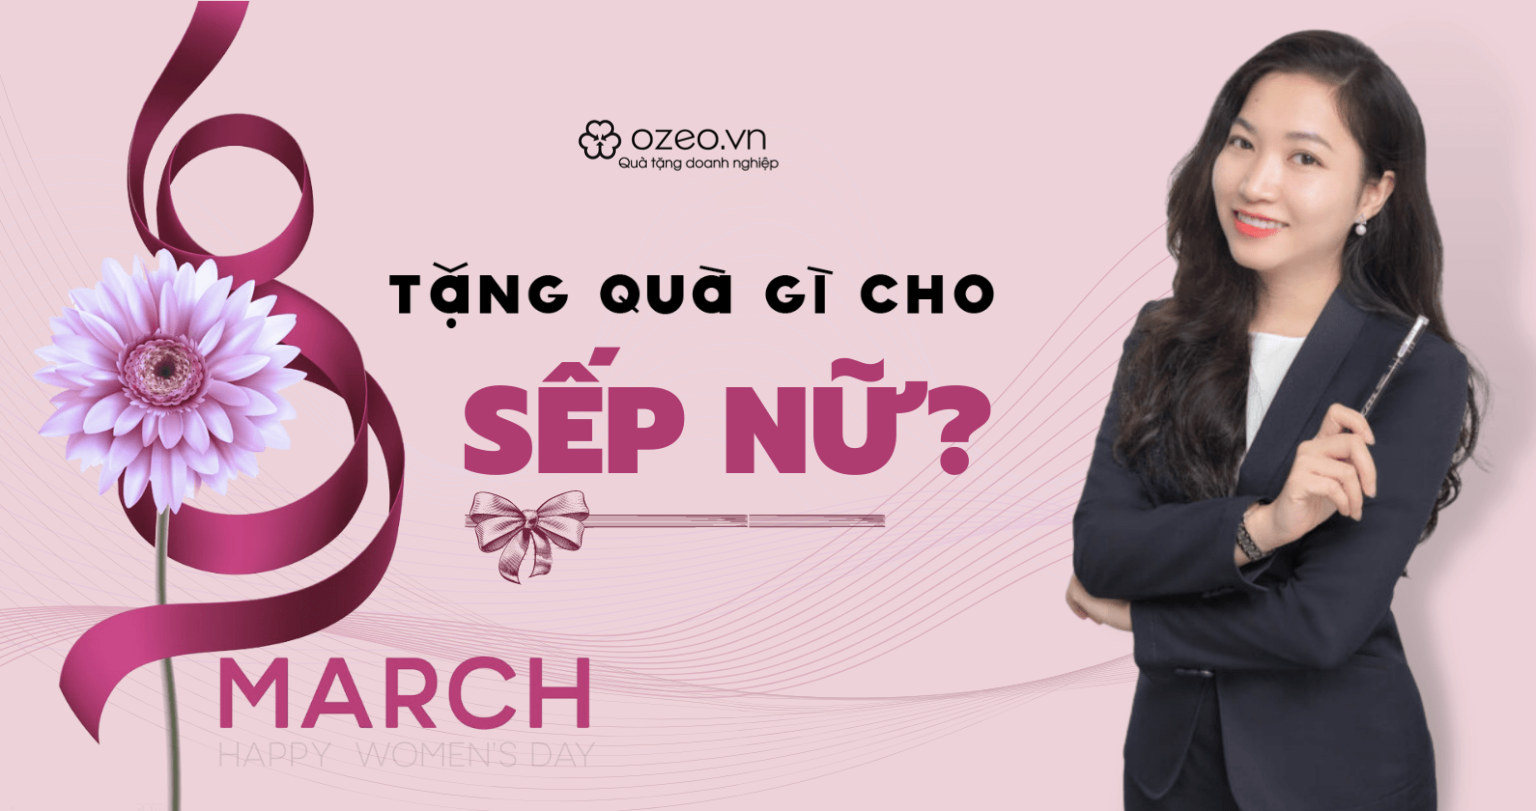 You are currently viewing 8 Tháng 3 Nên Tặng Quà Gì Cho Sếp Nữ?